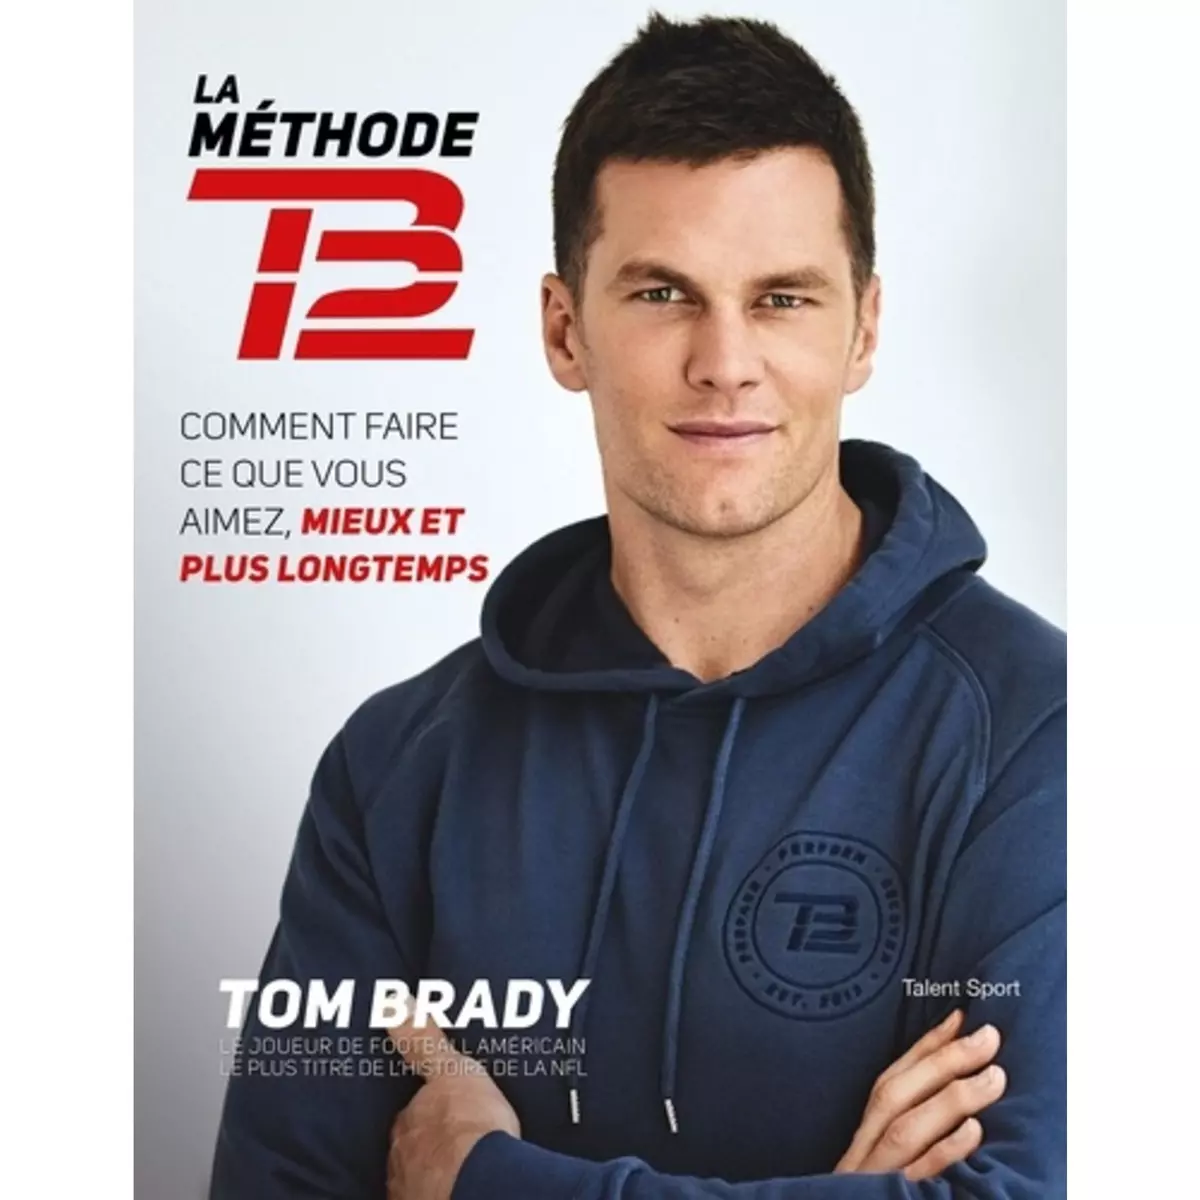  LA METHODE TB12. COMMENT FAIRE CE QUE VOUS AIMEZ, MIEUX ET PLUS LONGTEMPS, Brady Tom